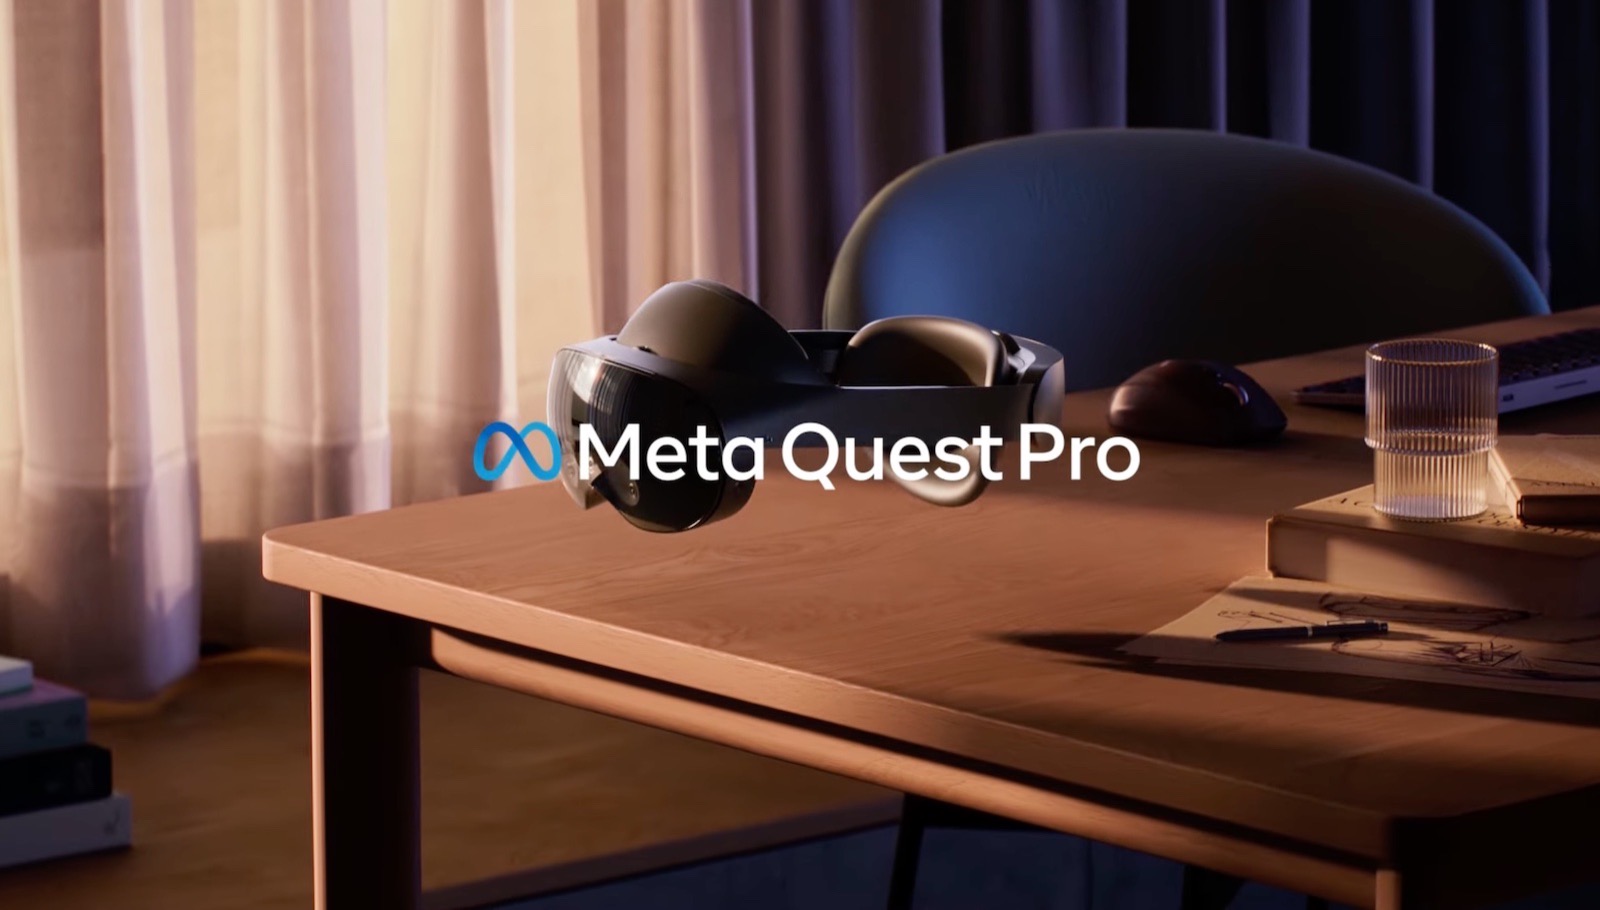 Meta Quest Pro from Meta facebook